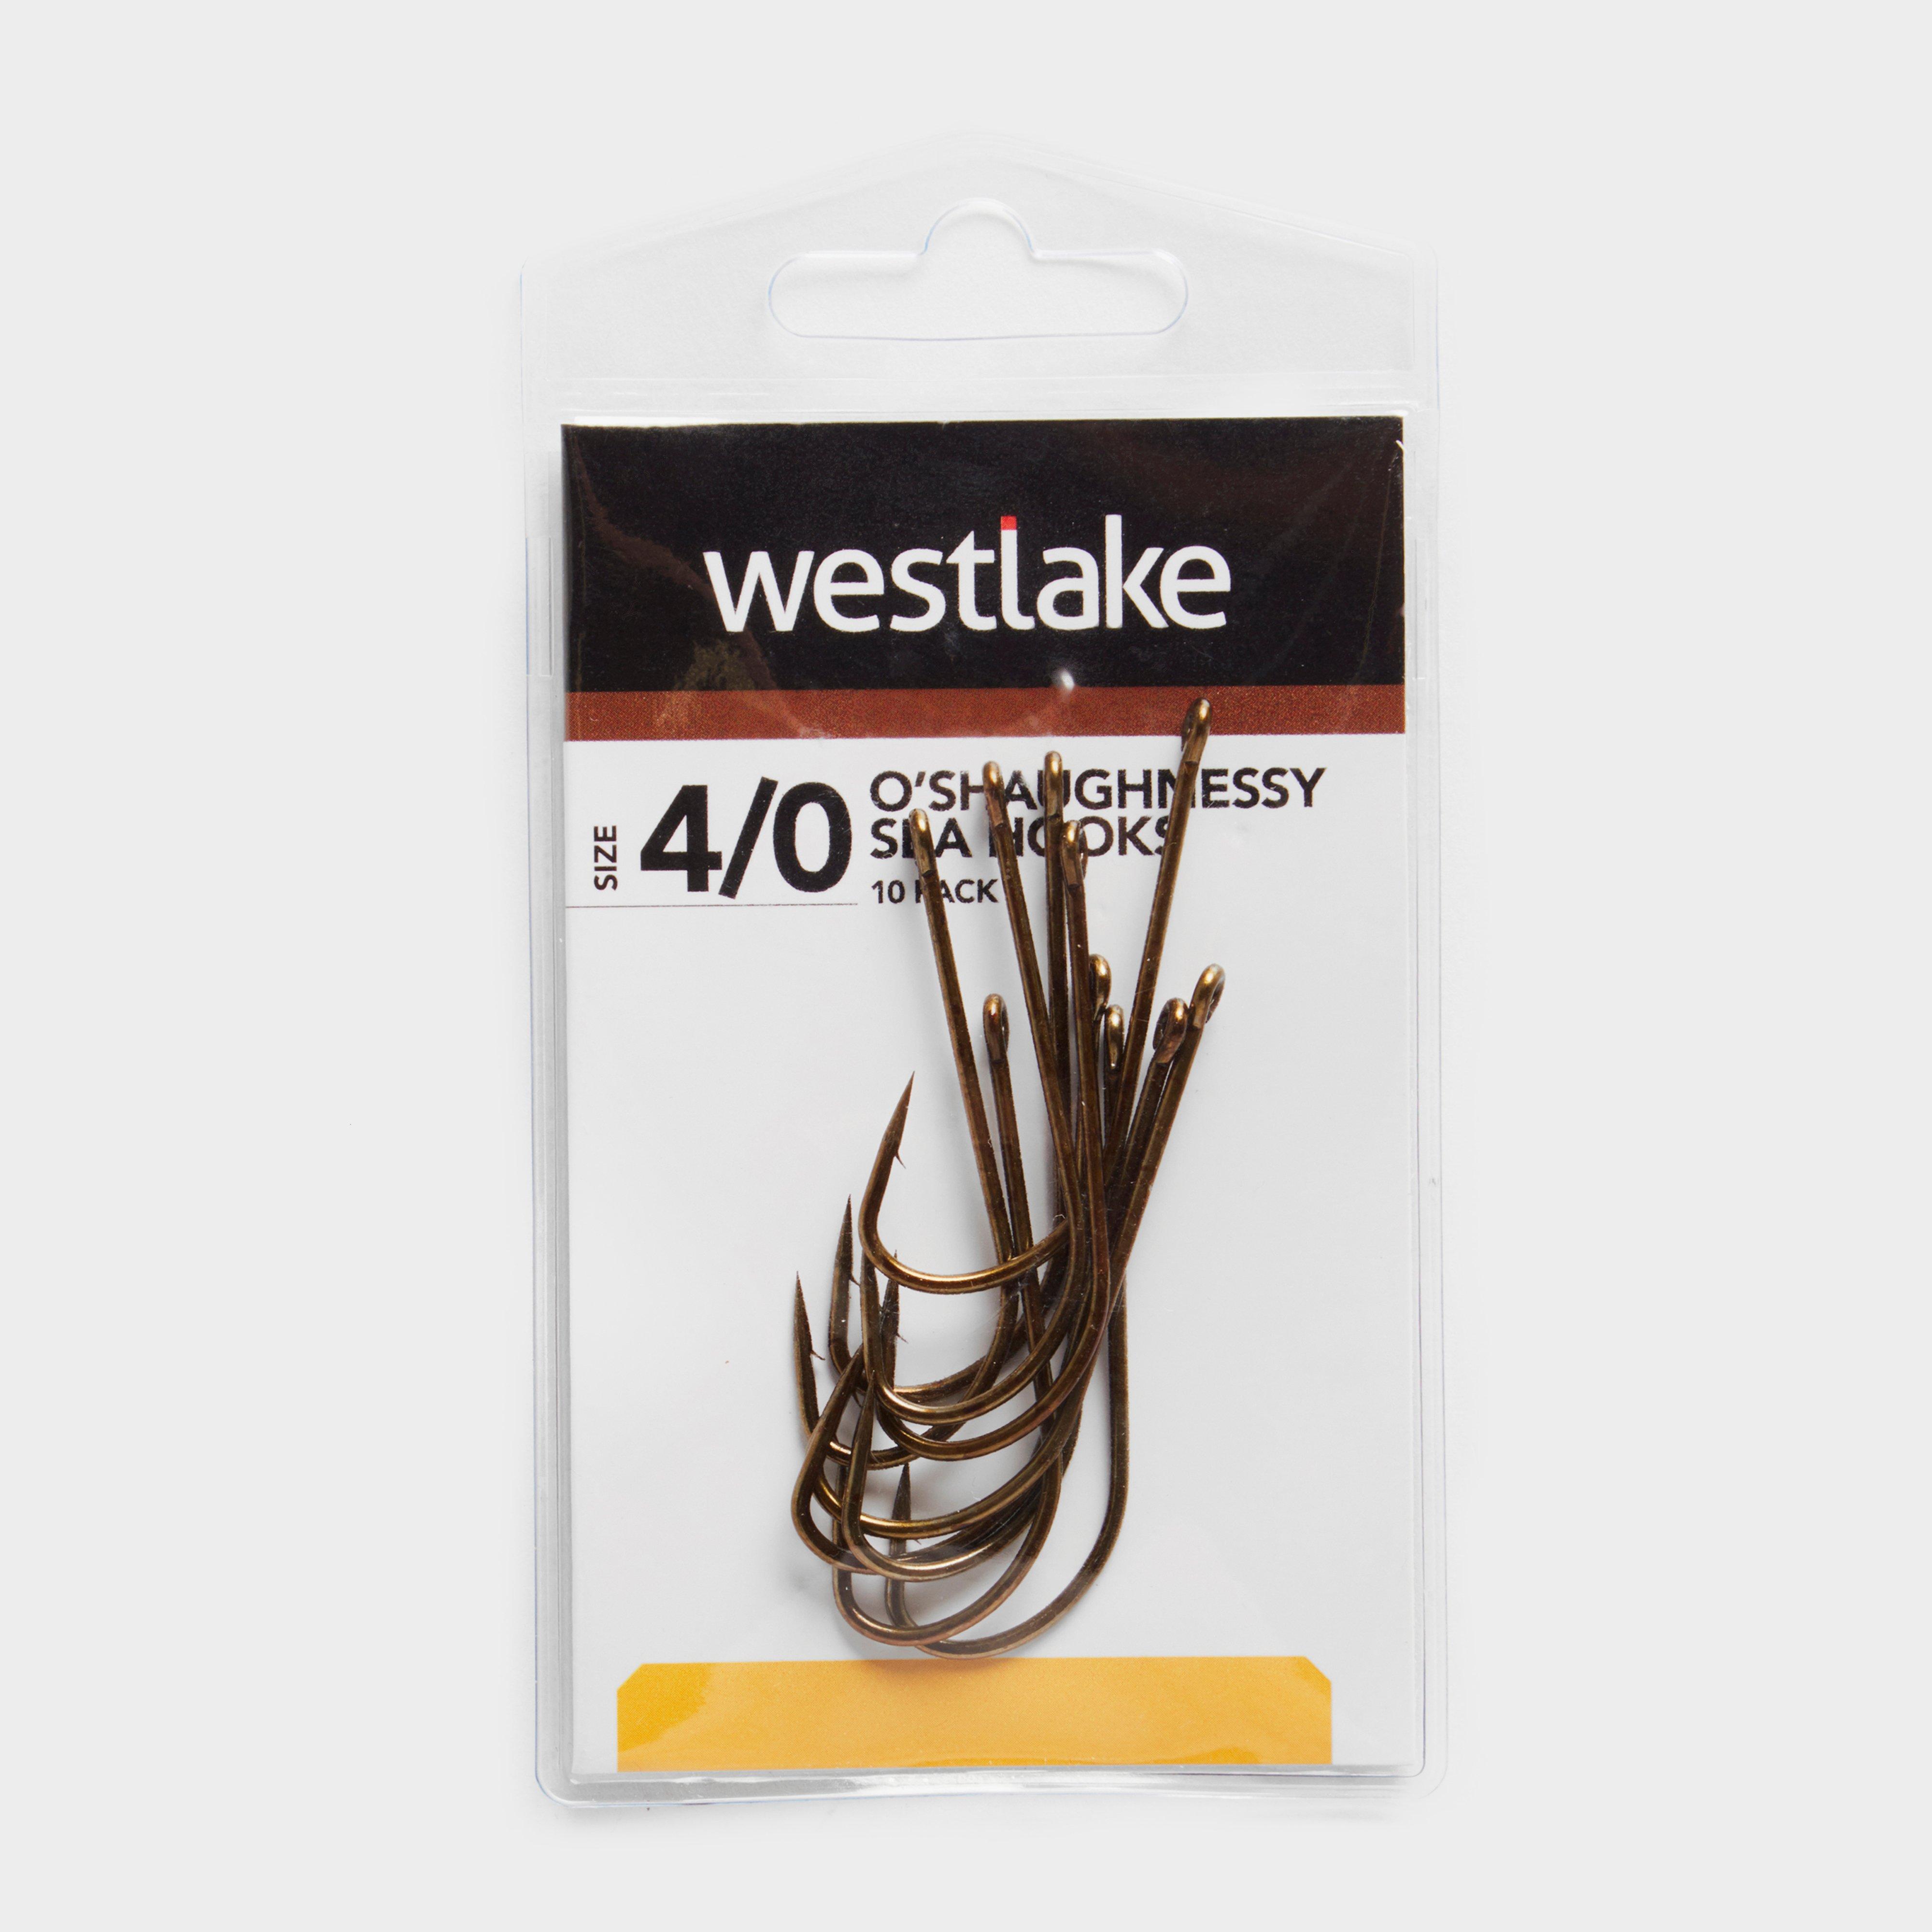 Westlake Oshaughnessy Sea Hooks (size 4/0) - 0/0  0/0